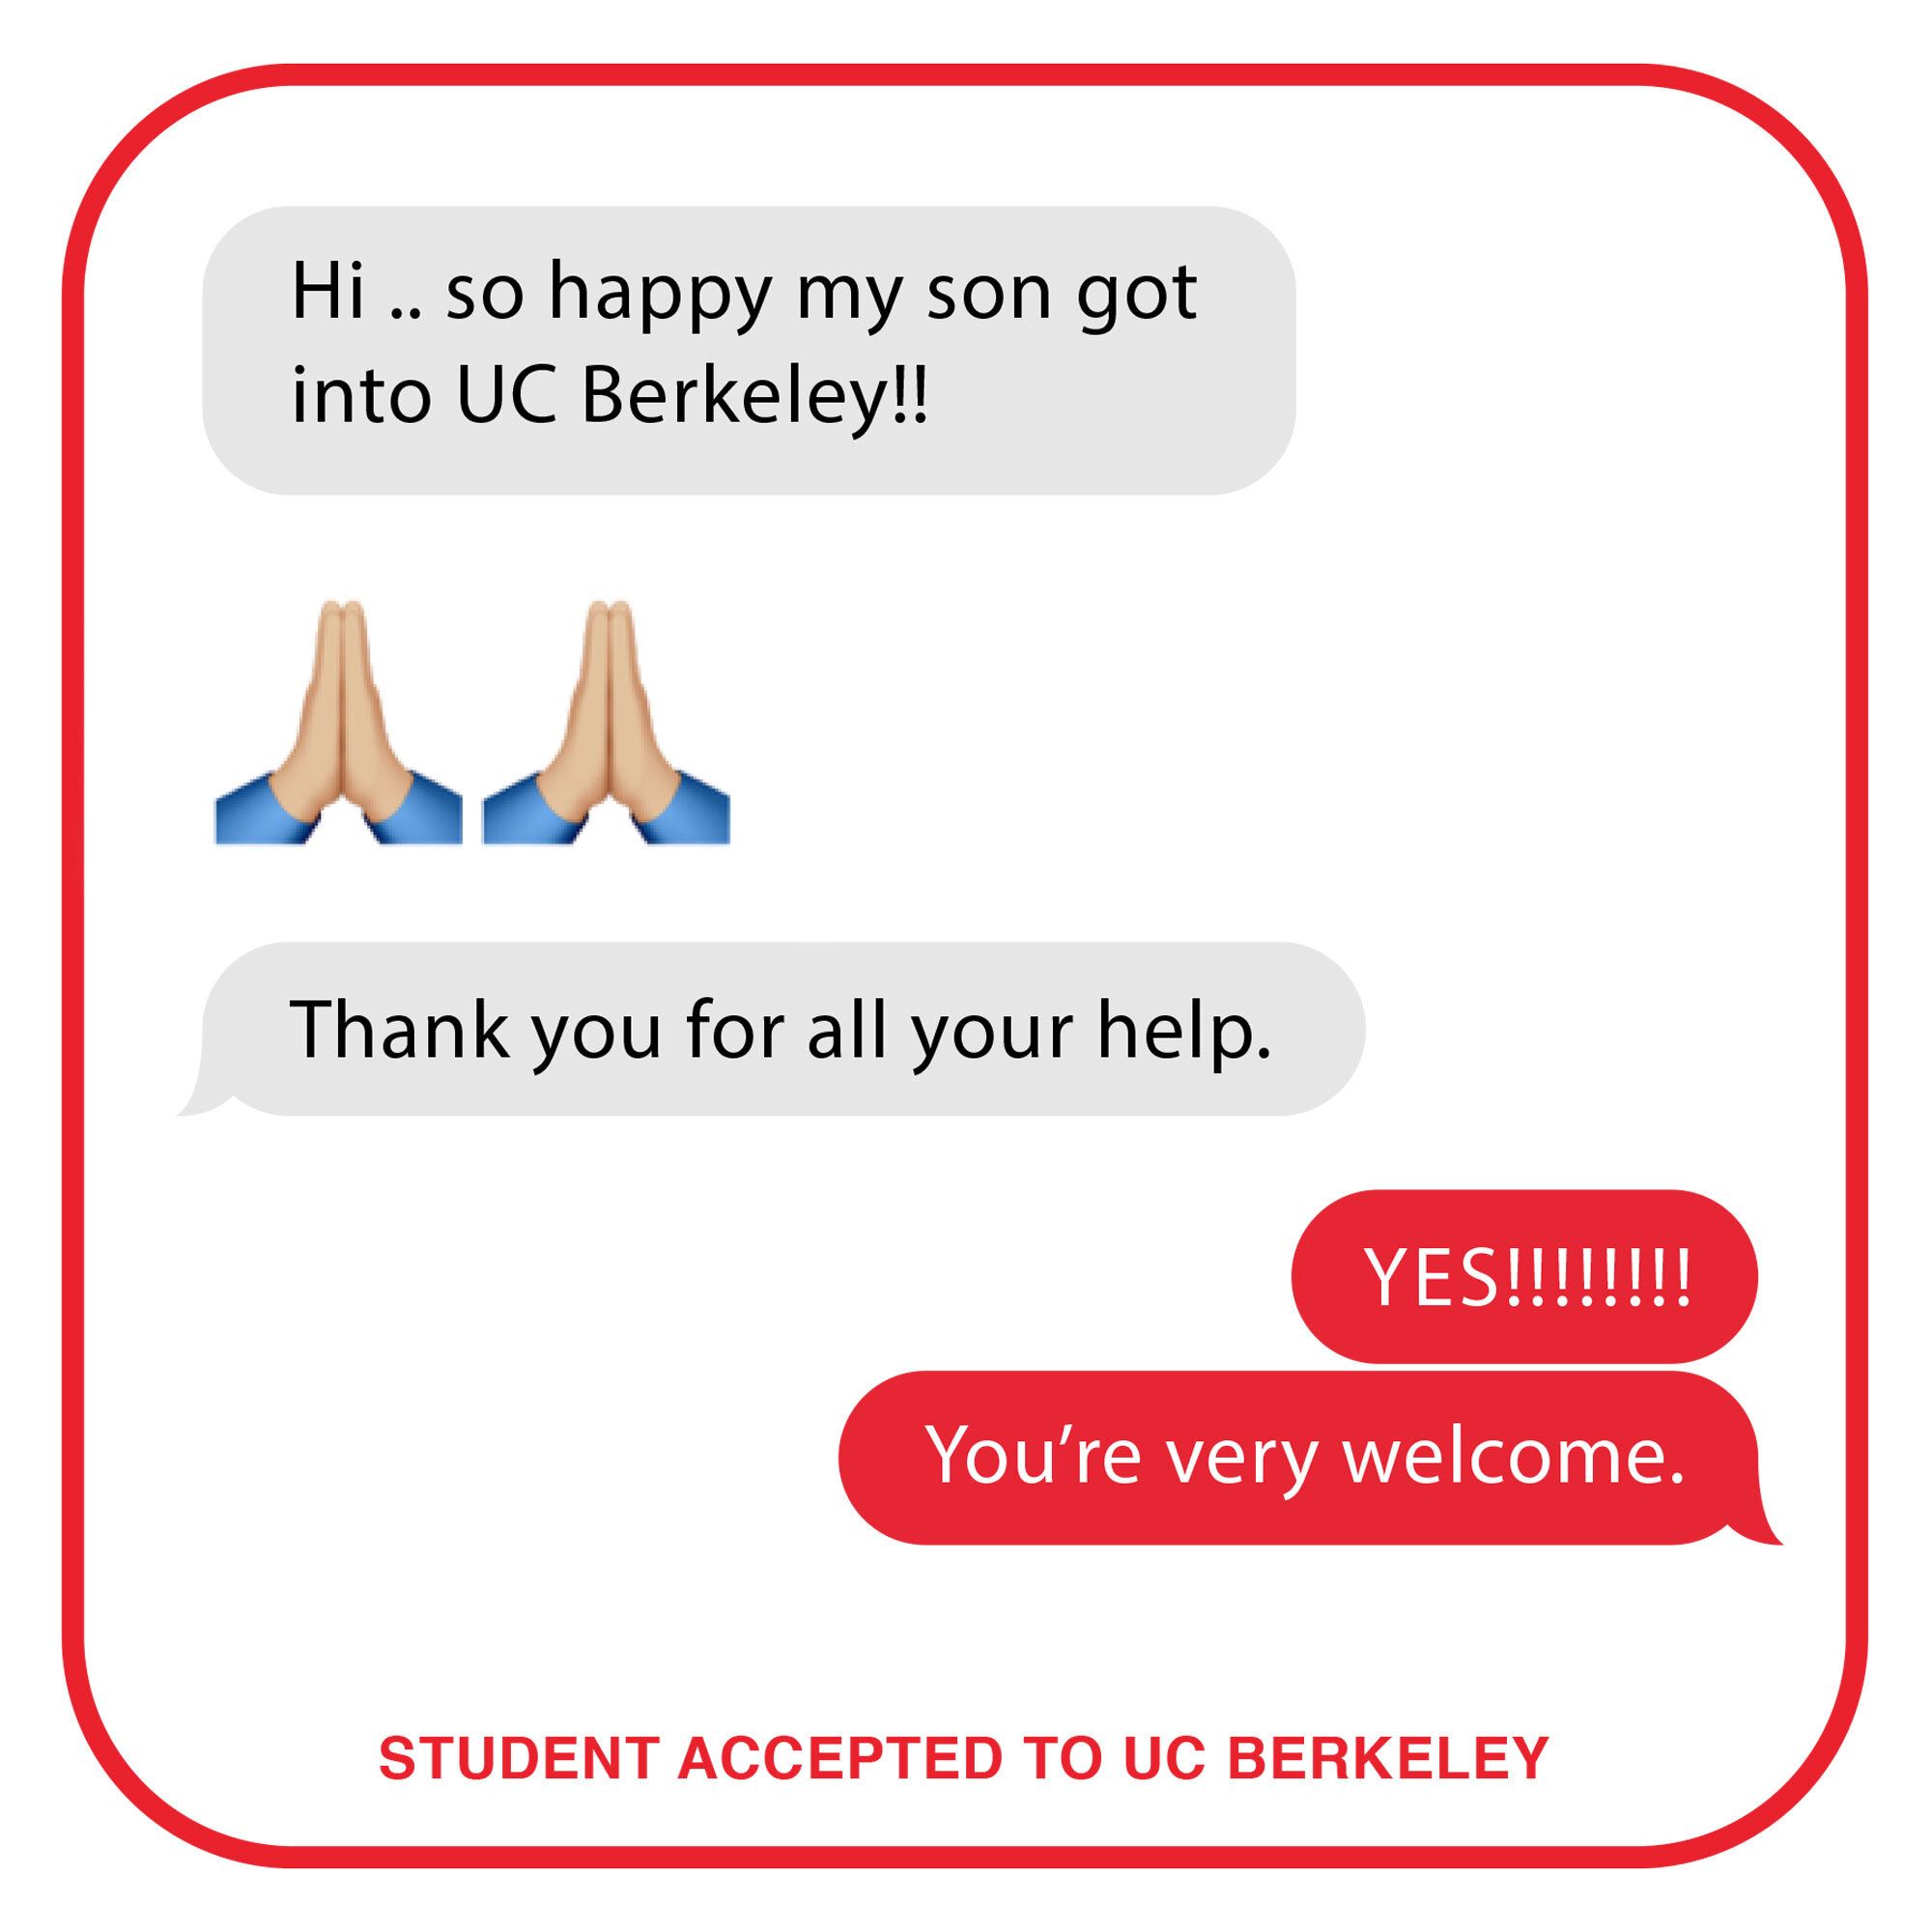 学生接受了UC Berkeley.jpg